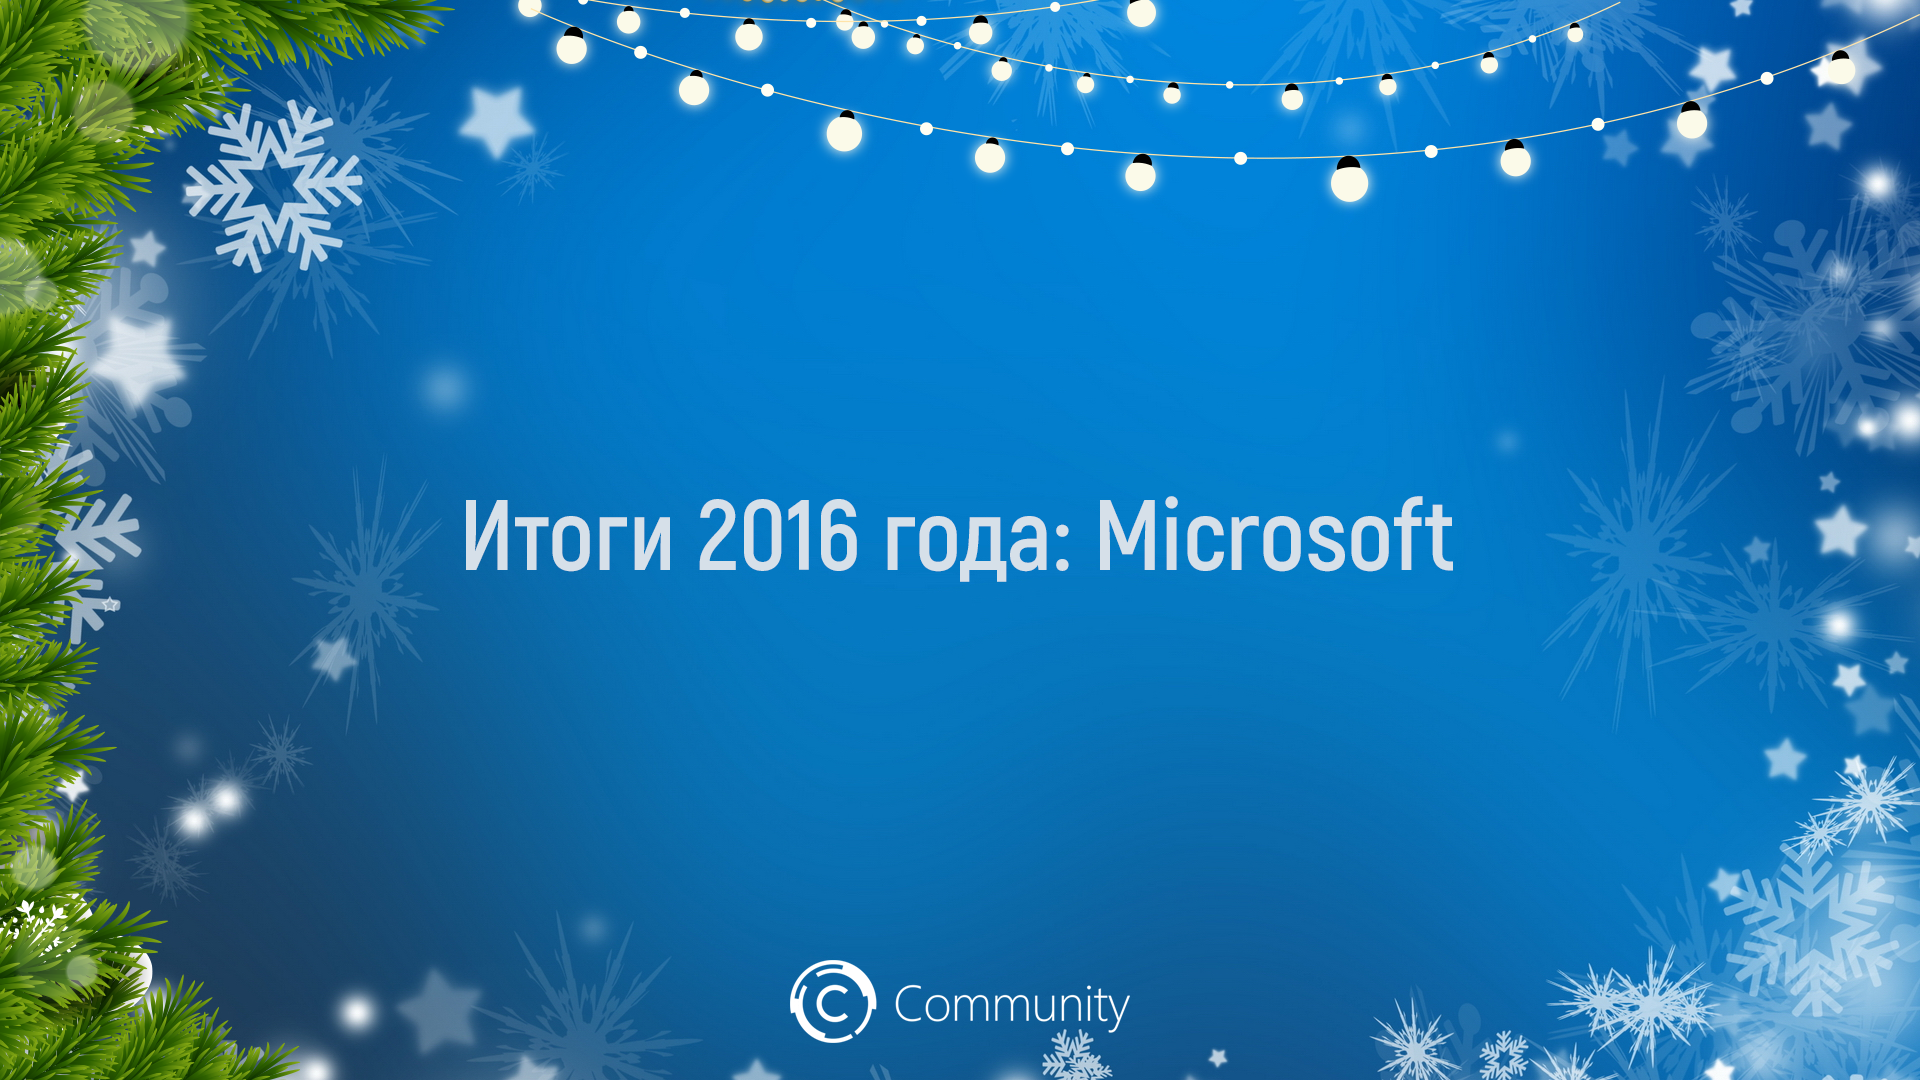 Итоги 2016 года: Microsoft (текстовая версия)